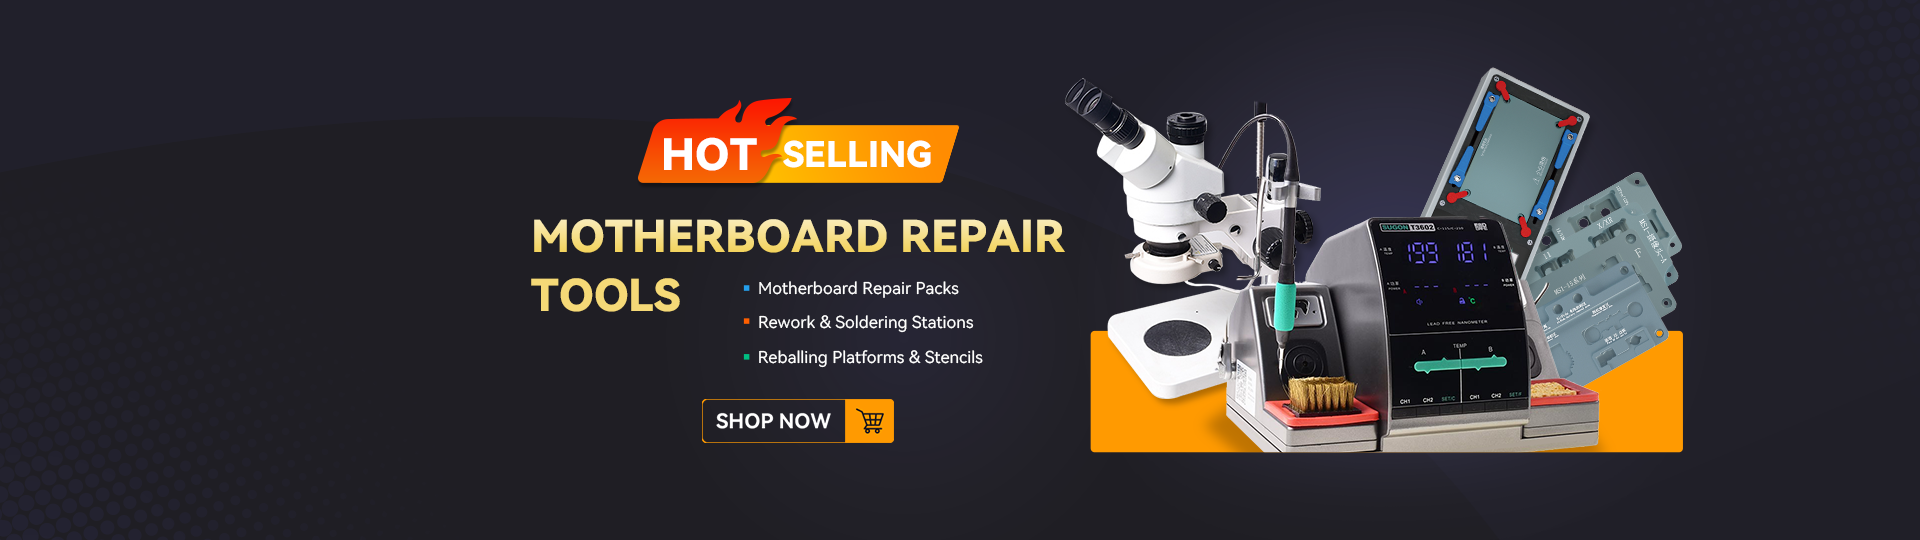 Hot Selling Motherboard Repair Tools at REWA Shop